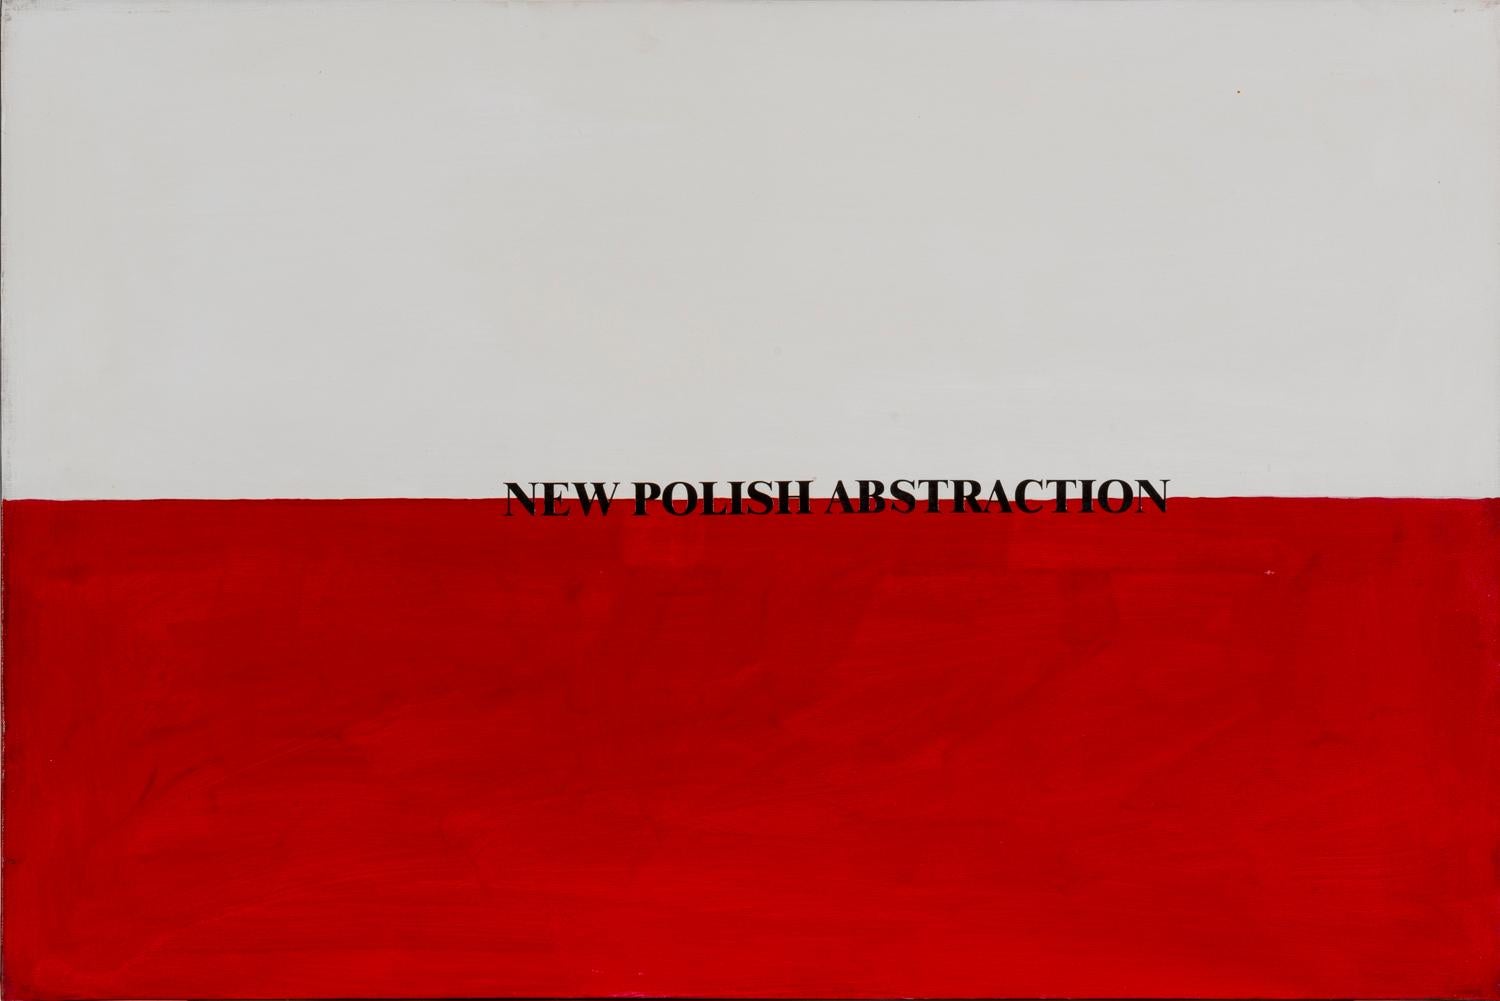 Neue polnische Abstraktion, 1972-2002, Acryl auf Leinwand, Flaggen, Visuelle Poesie – Painting von Sarenco